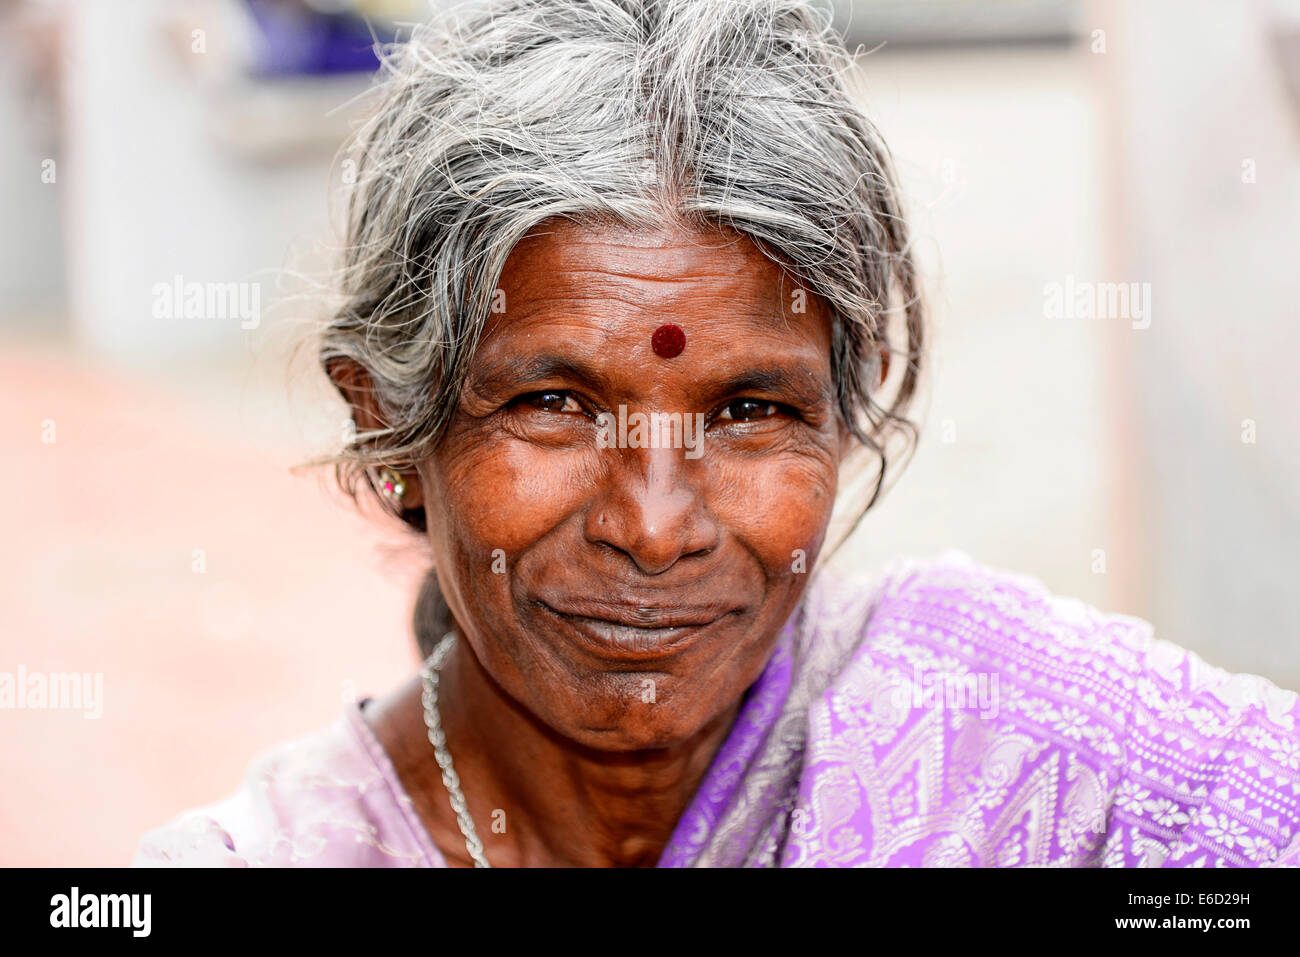 Personnes âgées Indian woman, portrait, Mysore, Karnataka, Inde du Sud, Inde Banque D'Images